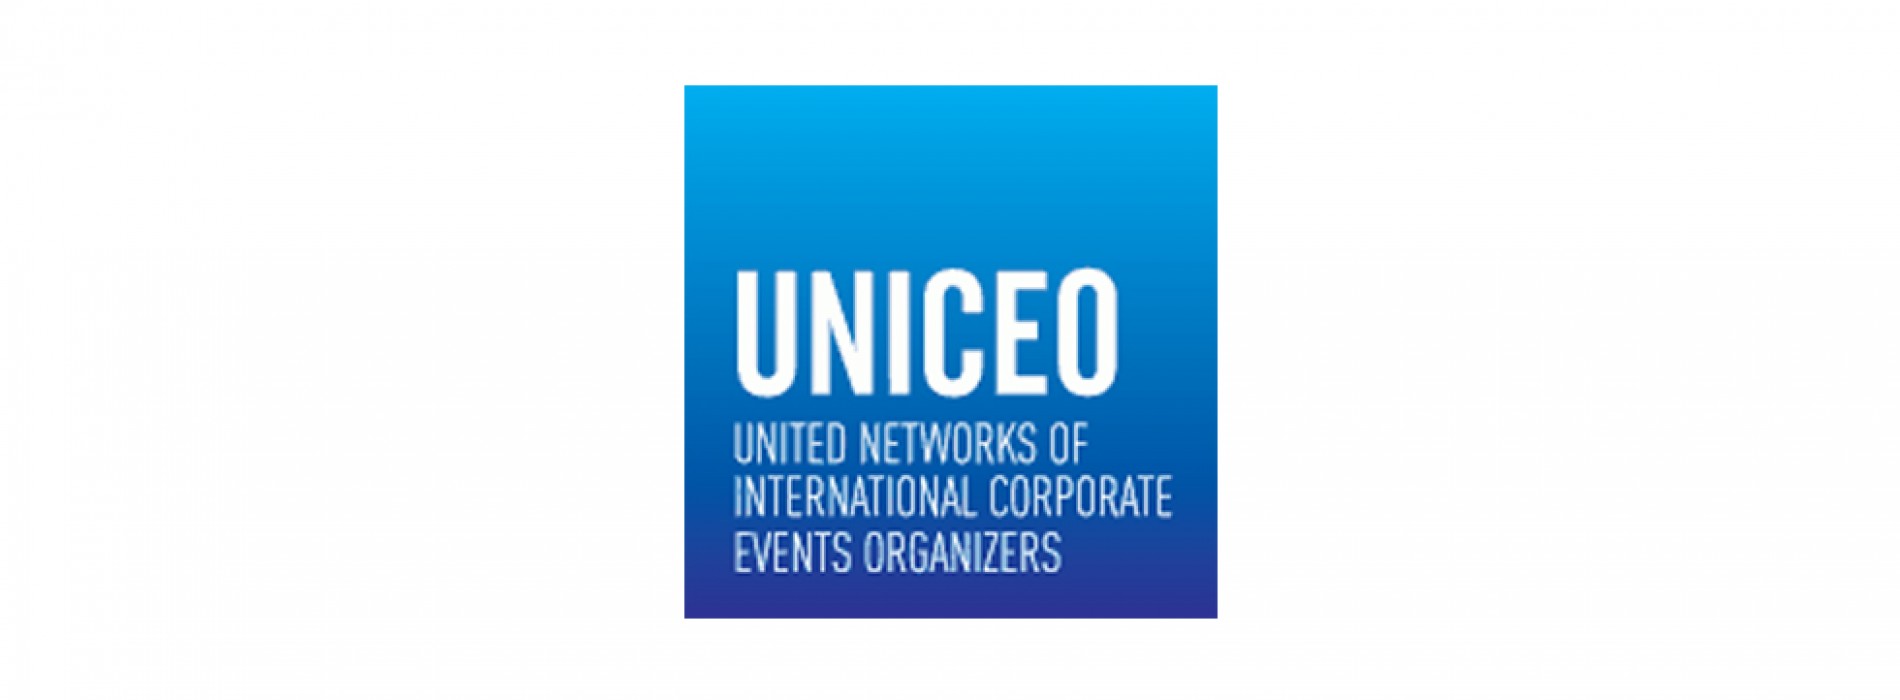 UNICEO announces its 2018 European Congress